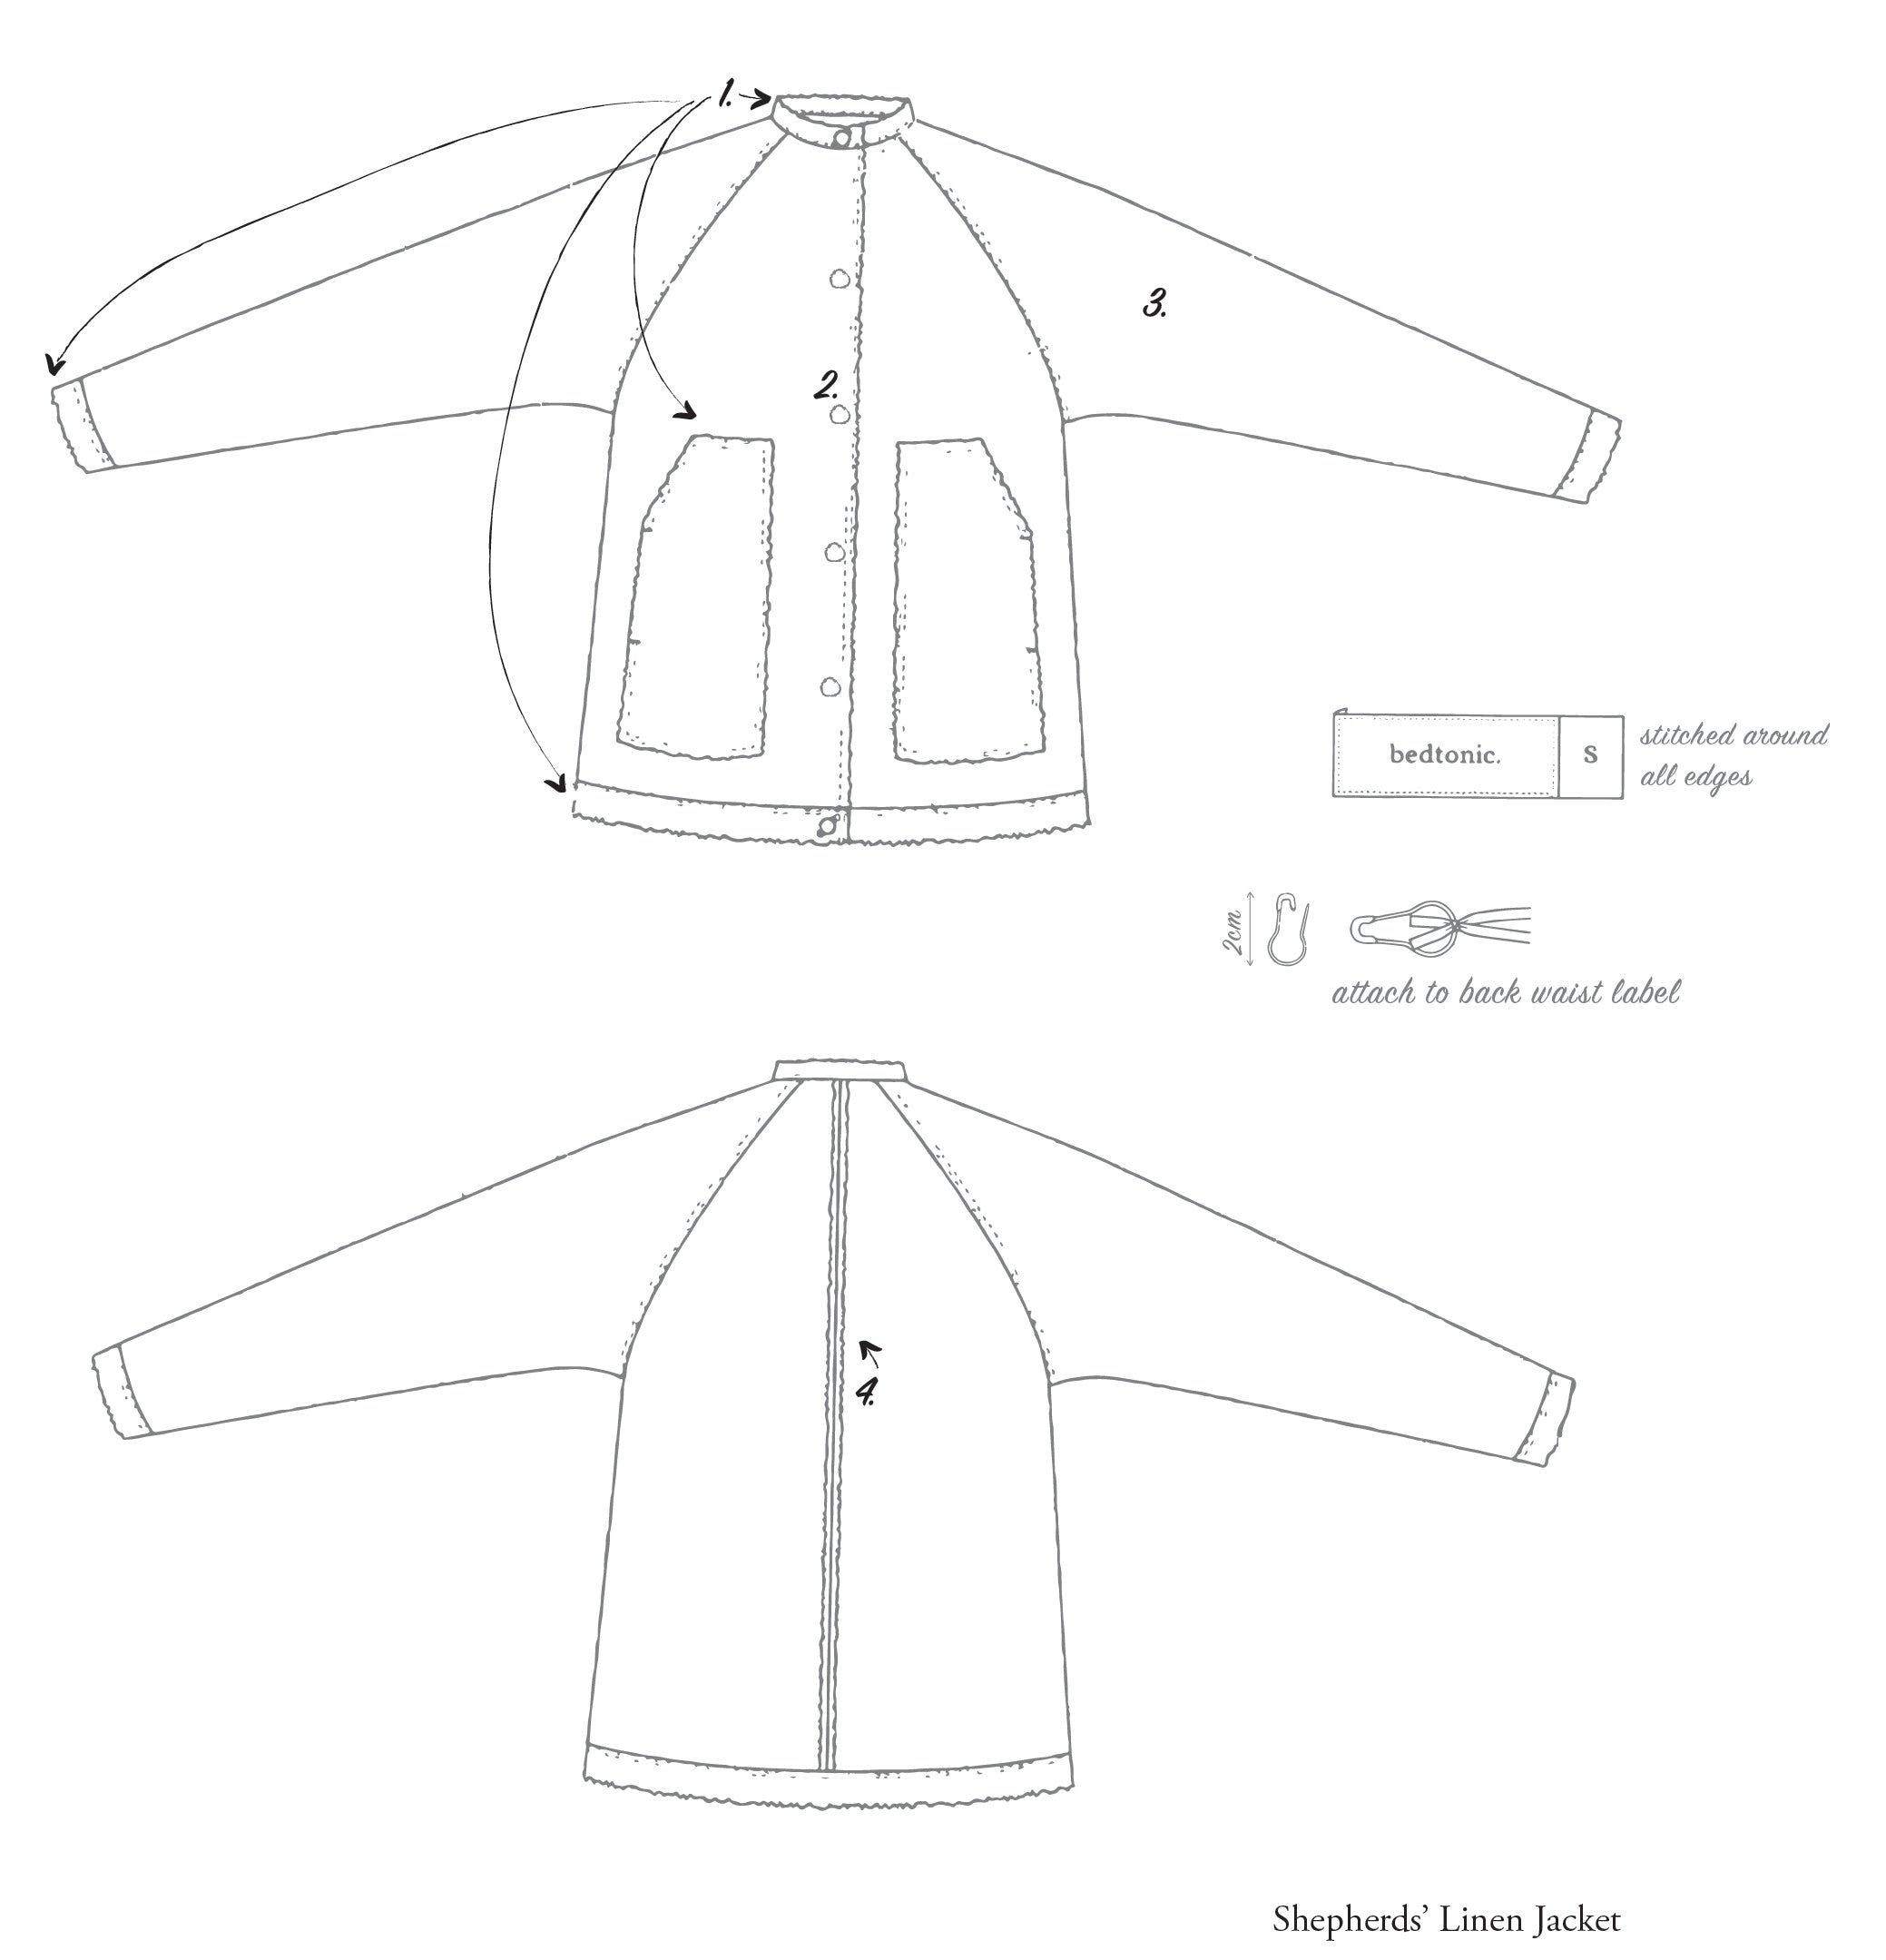 Sheperds' Linen Jacket garment sketch